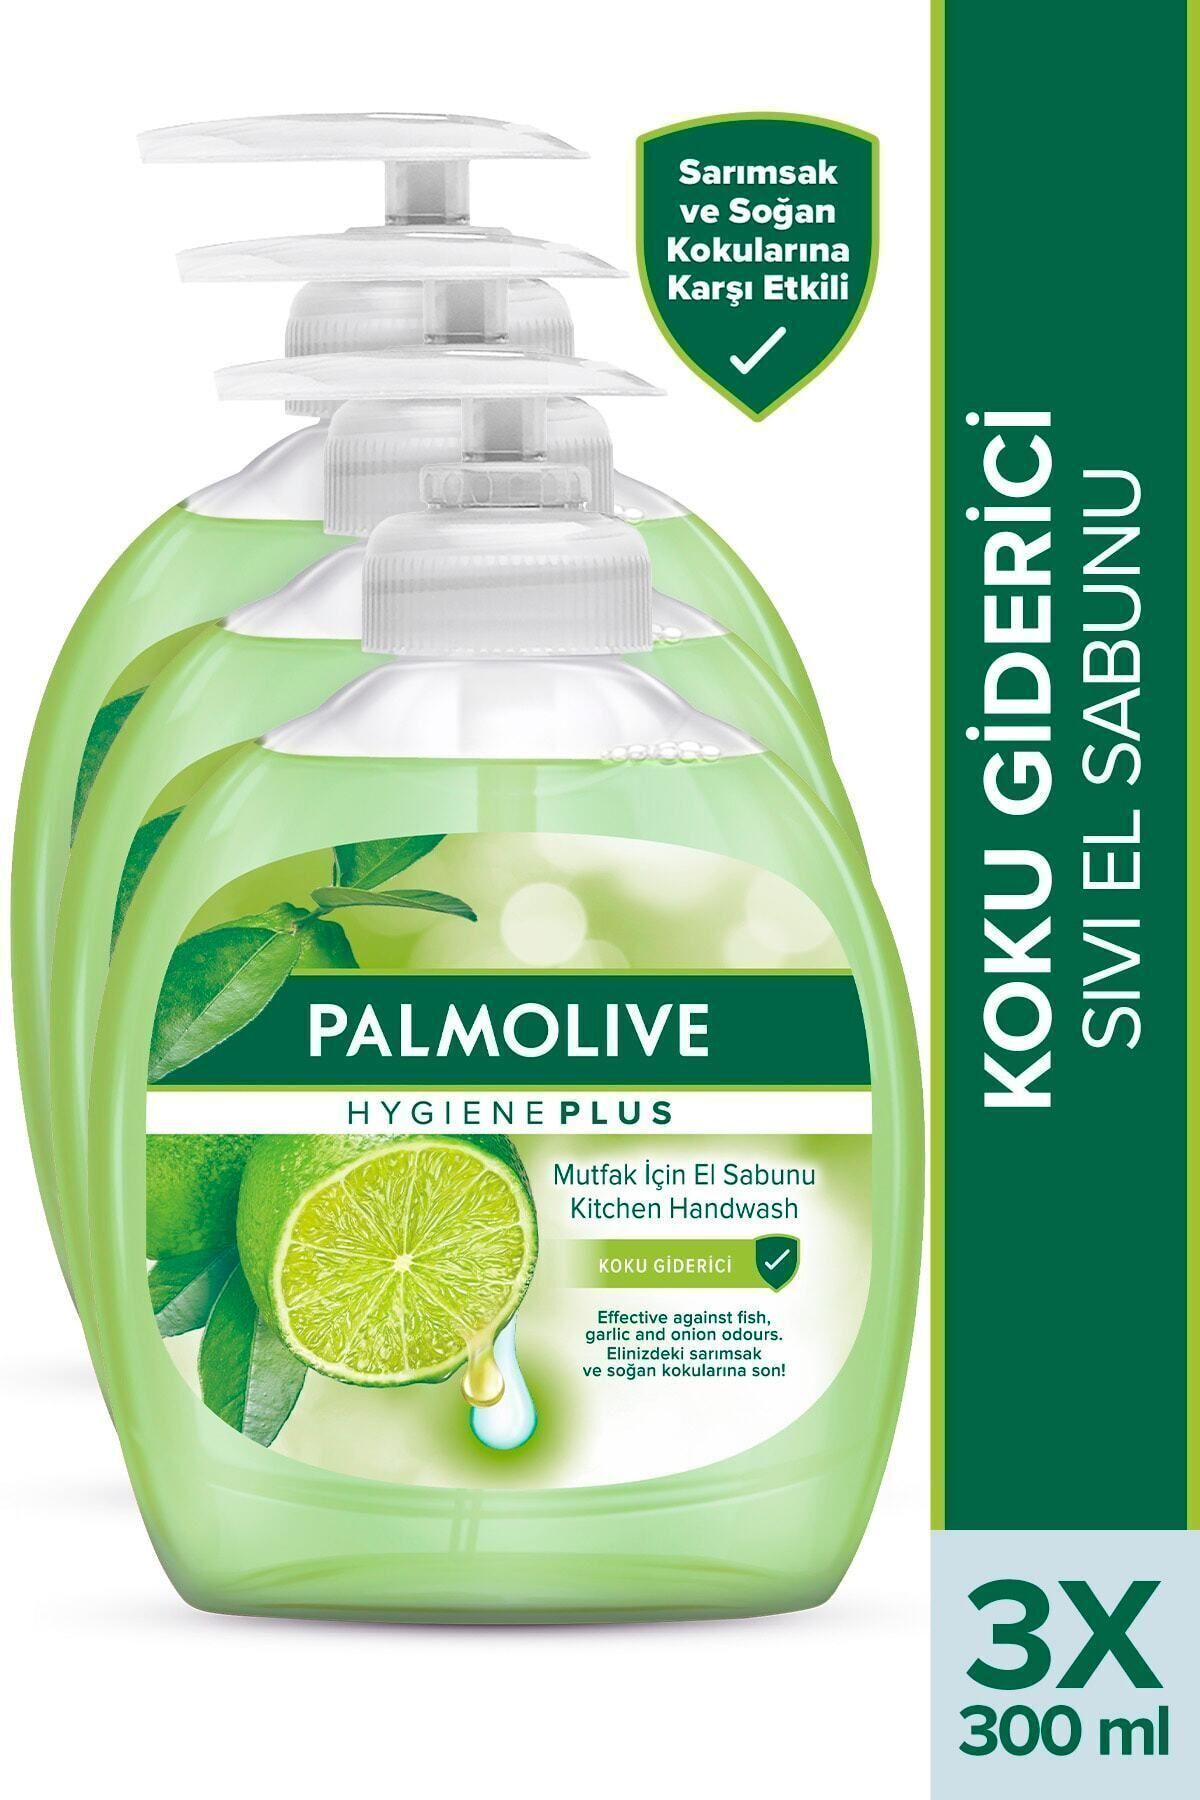 Palmolive Mutfak için Koku Giderici Sıvı El Sabunu 3 X 300 ml